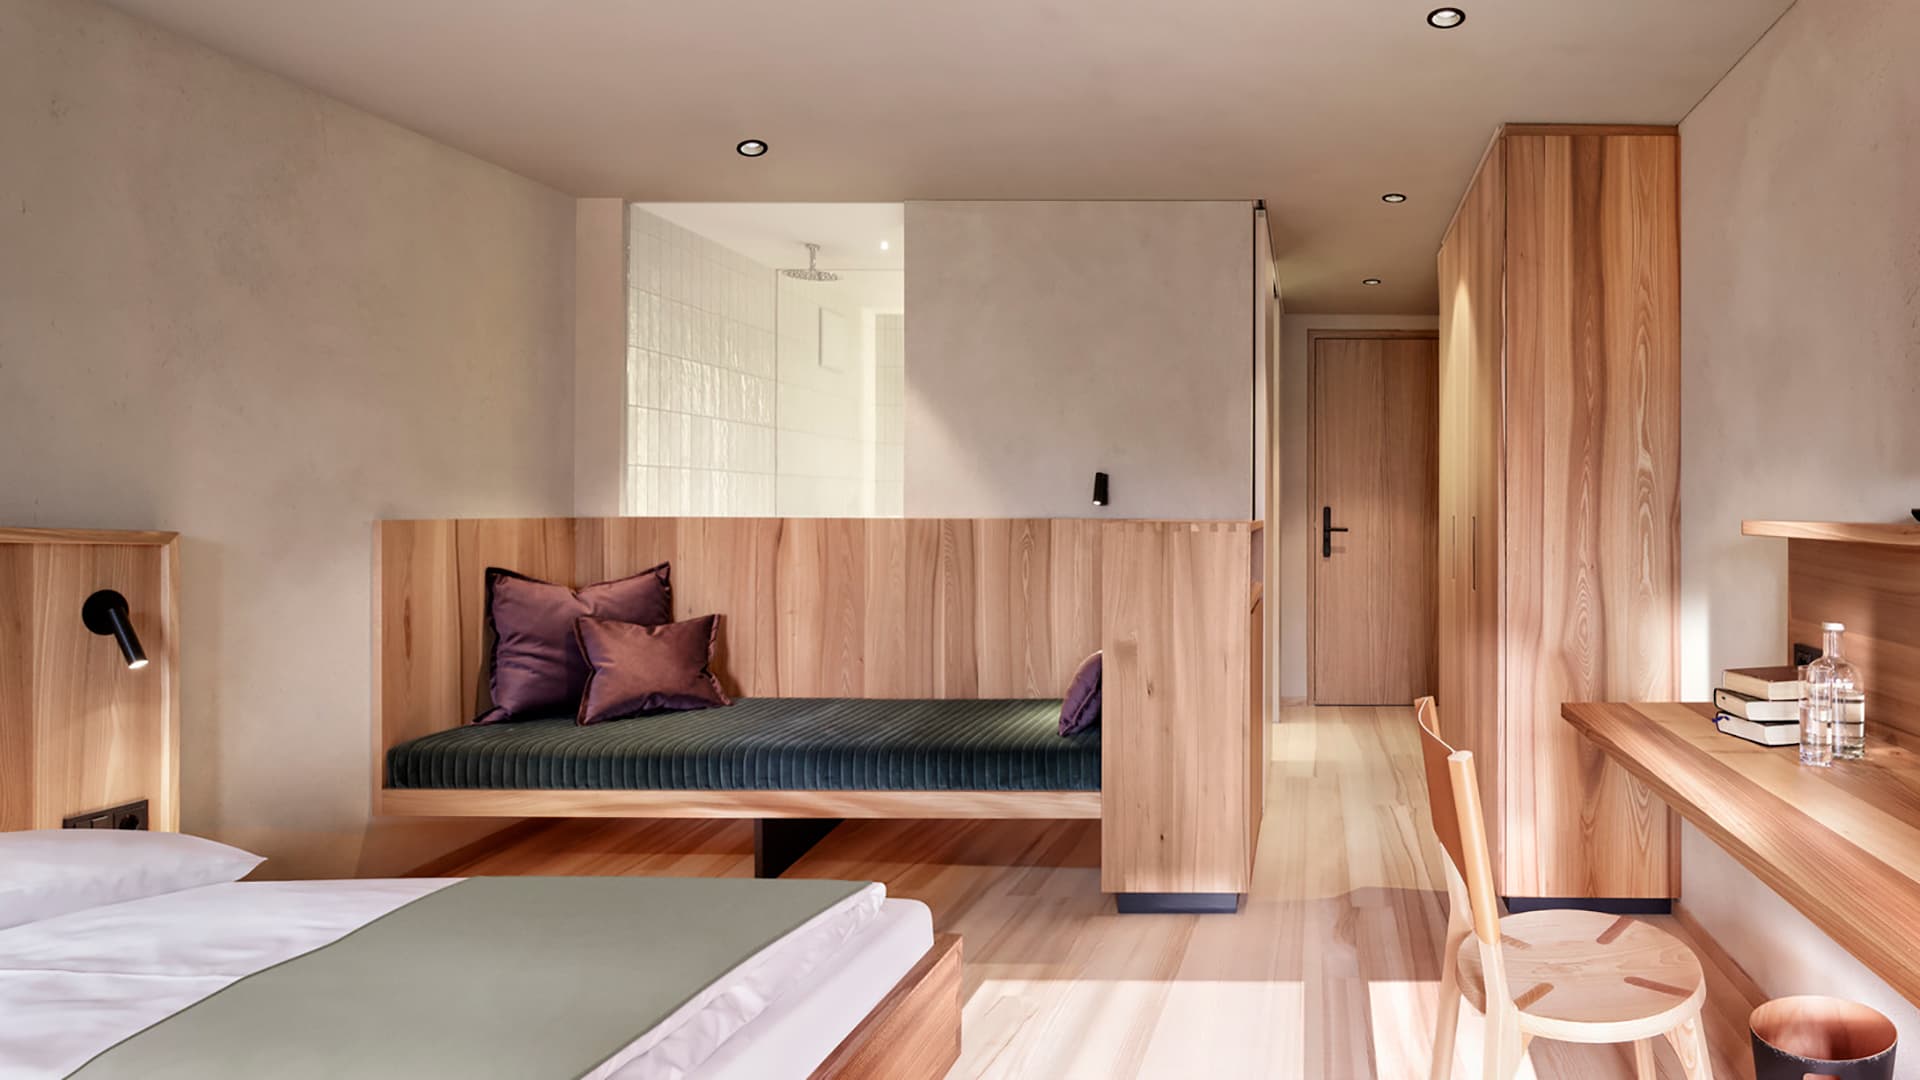 Теплый домашний интерьер семейного отеля в Австрии – проект архитектурного бюро firm Architekten